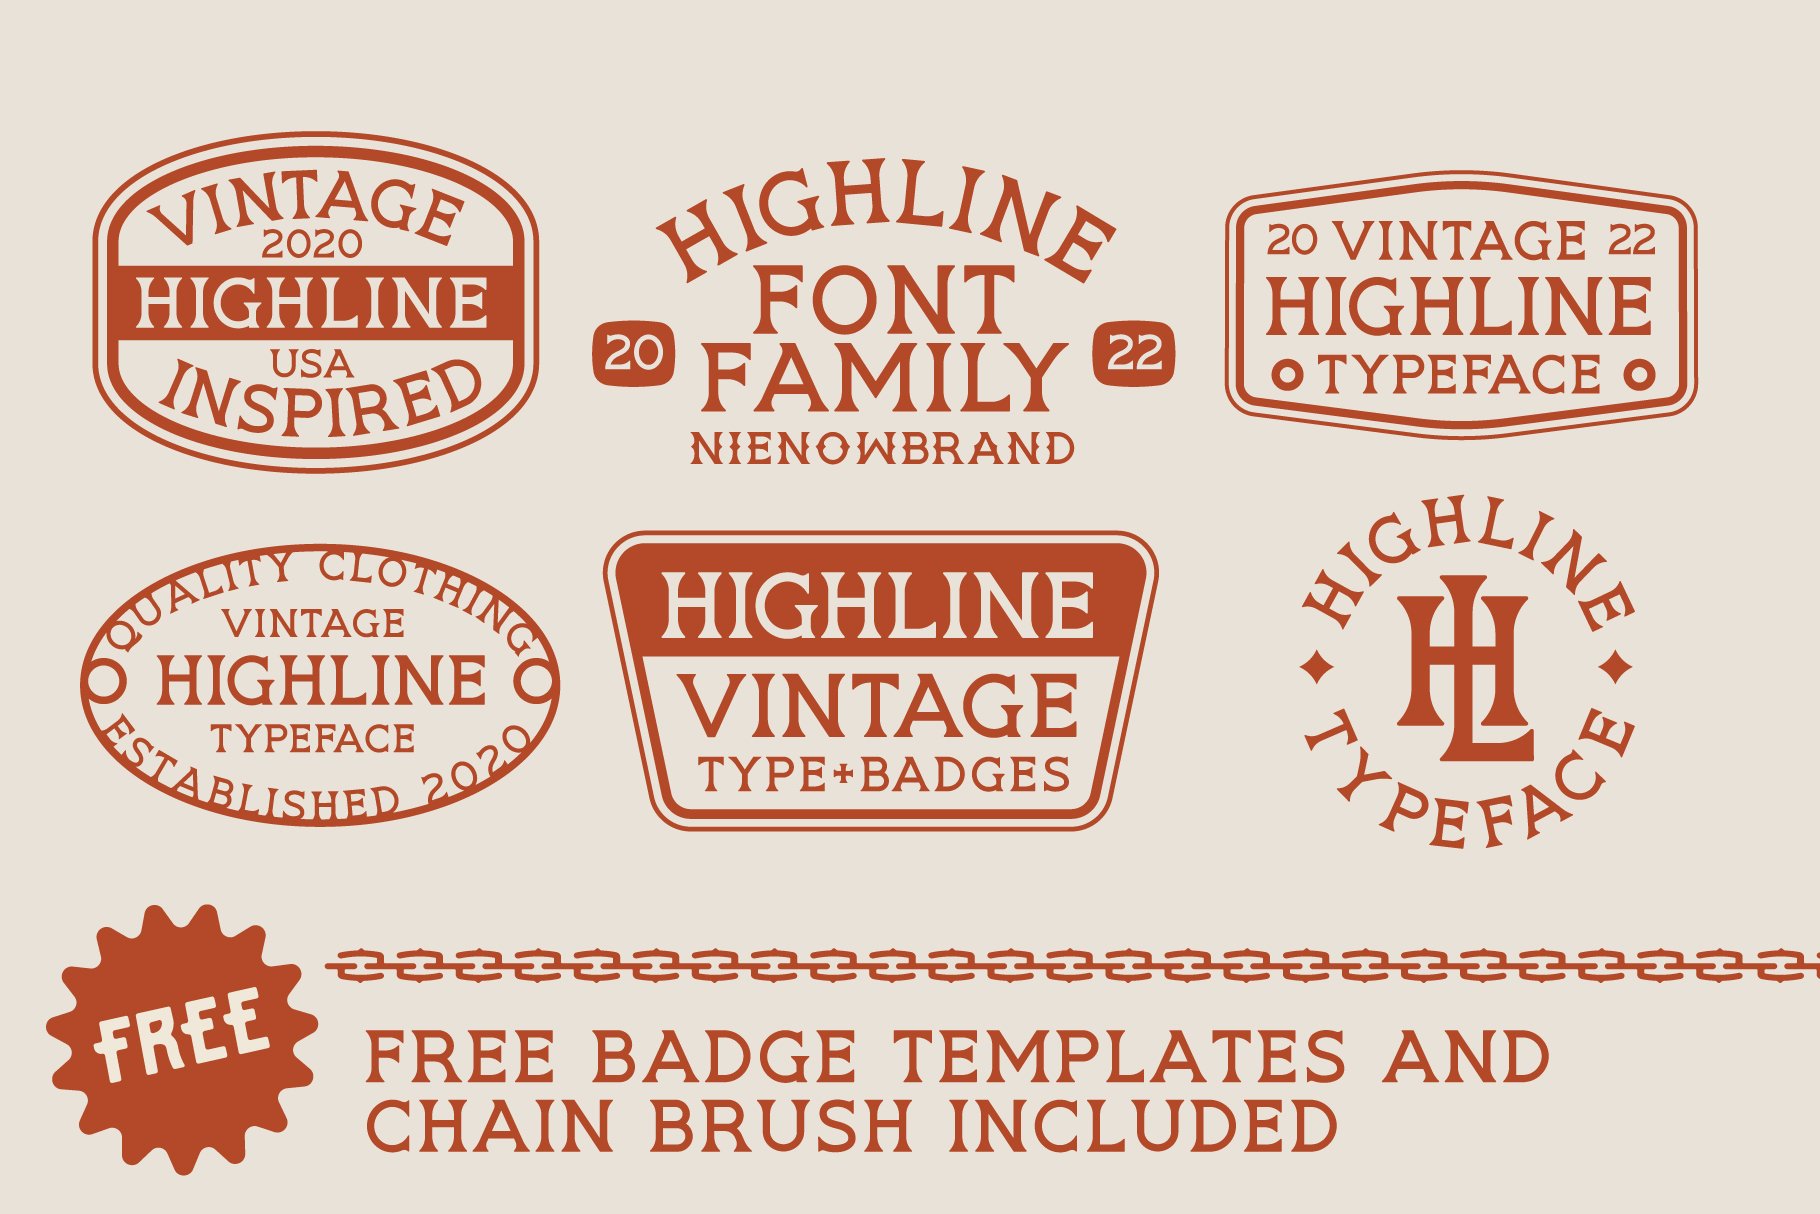 HIGHLINE Font | Vintage Font preview image.